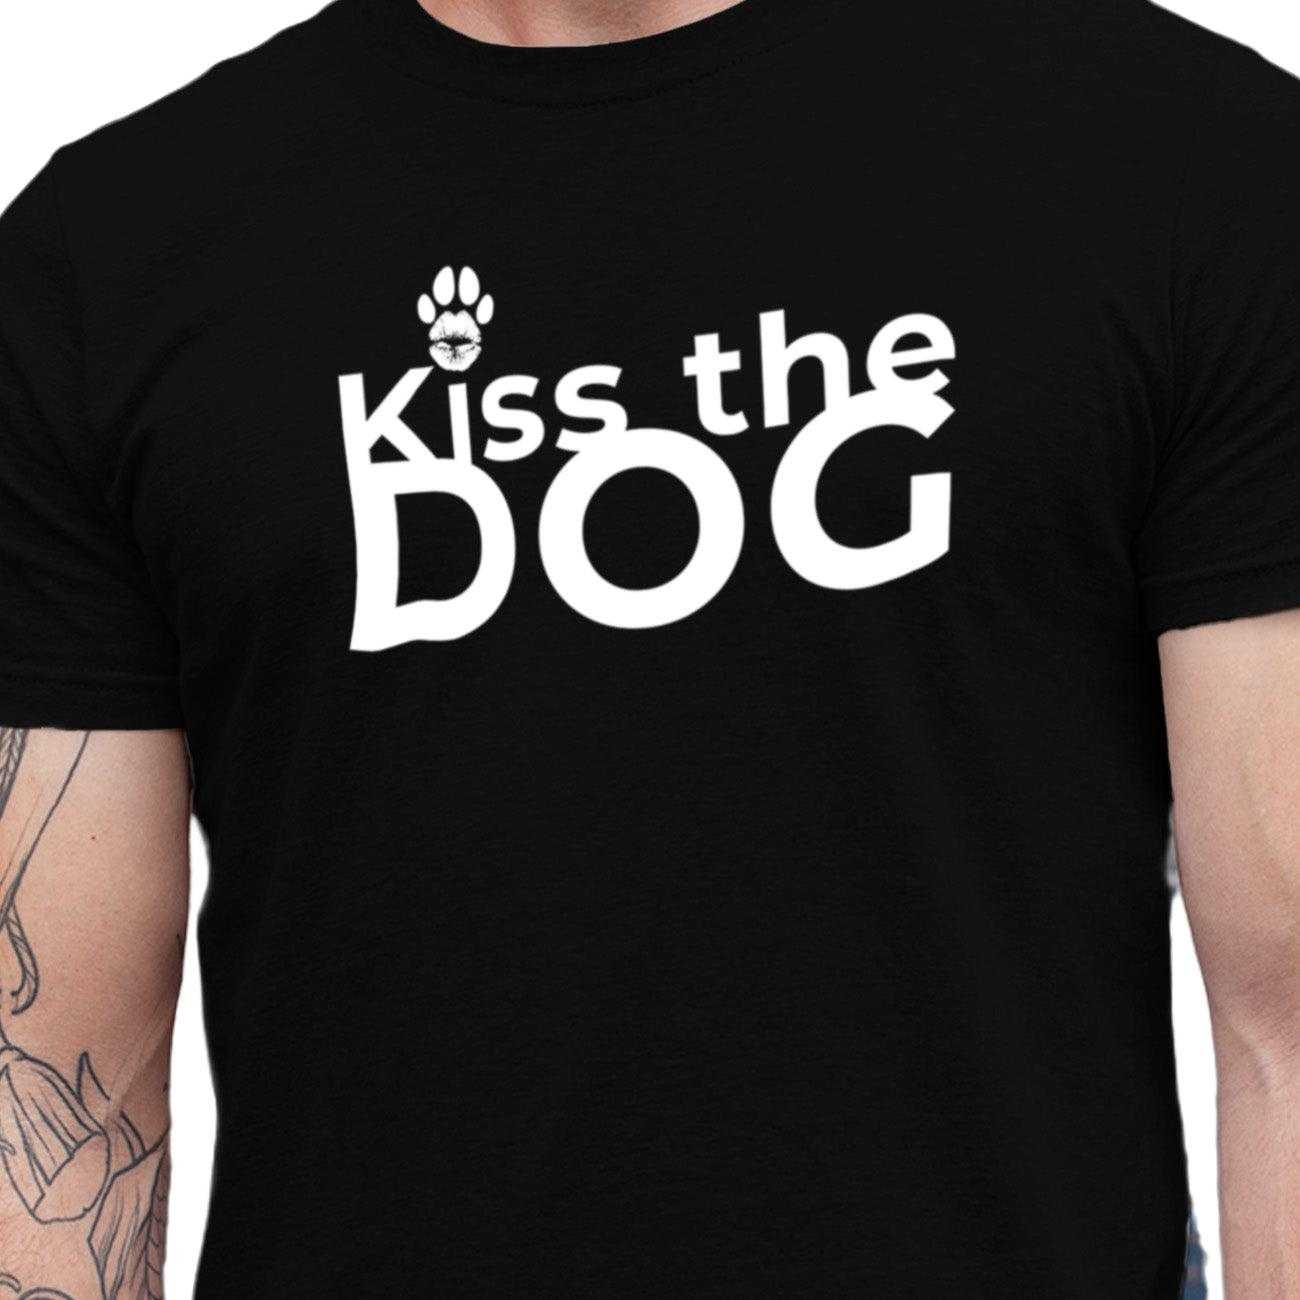 T-Shirt - "Kiss the Dog" Kussmund "i Punkt" ohne Kralle